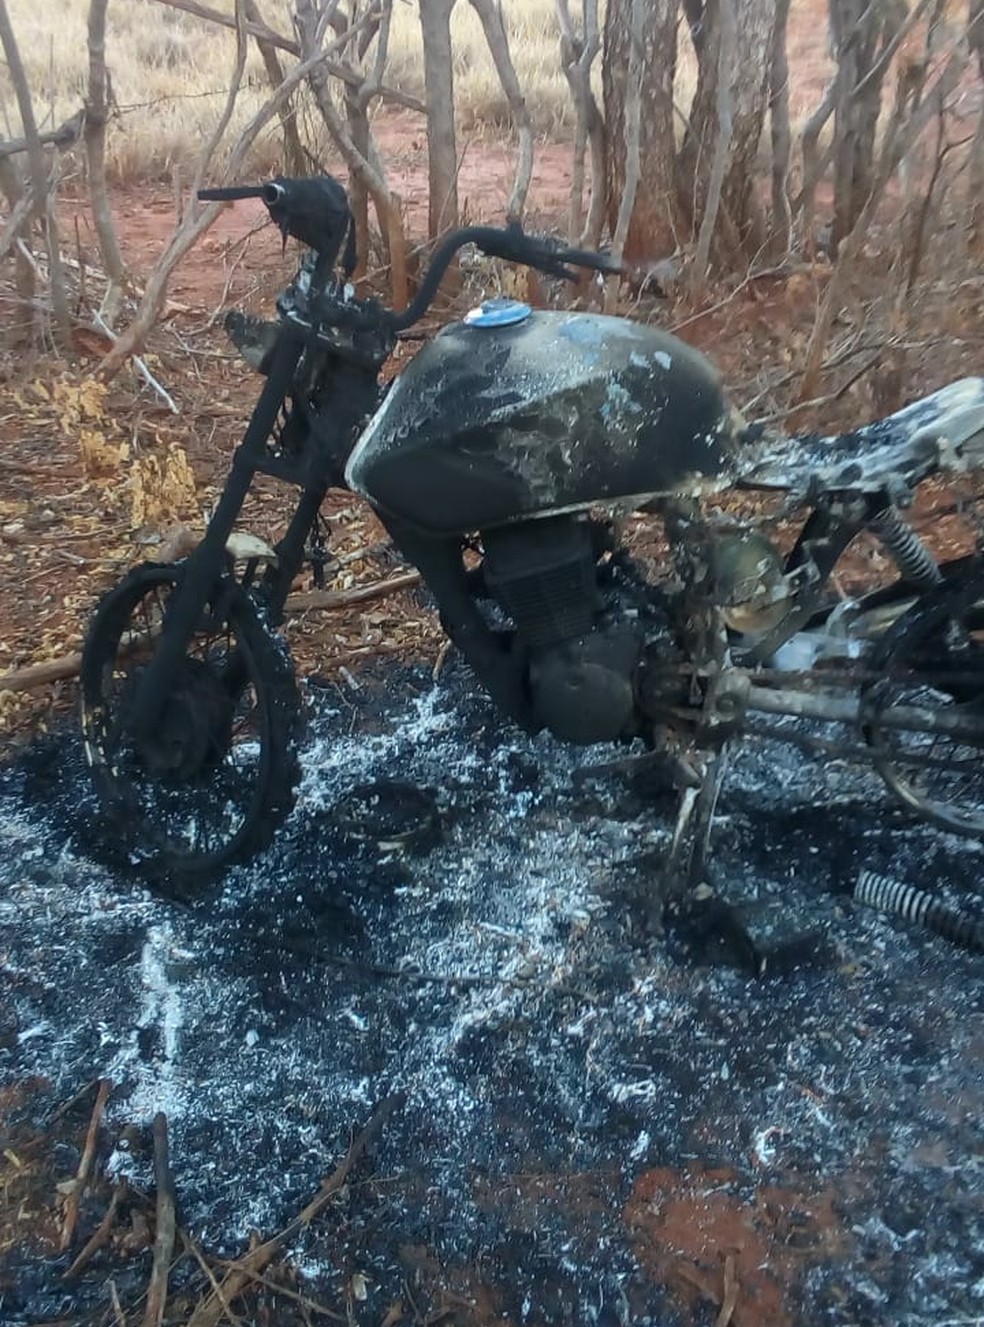 Motocicleta roubada em Espinosa foi encontrada carbonizada (Foto: Polícia Militar/Divulgação)